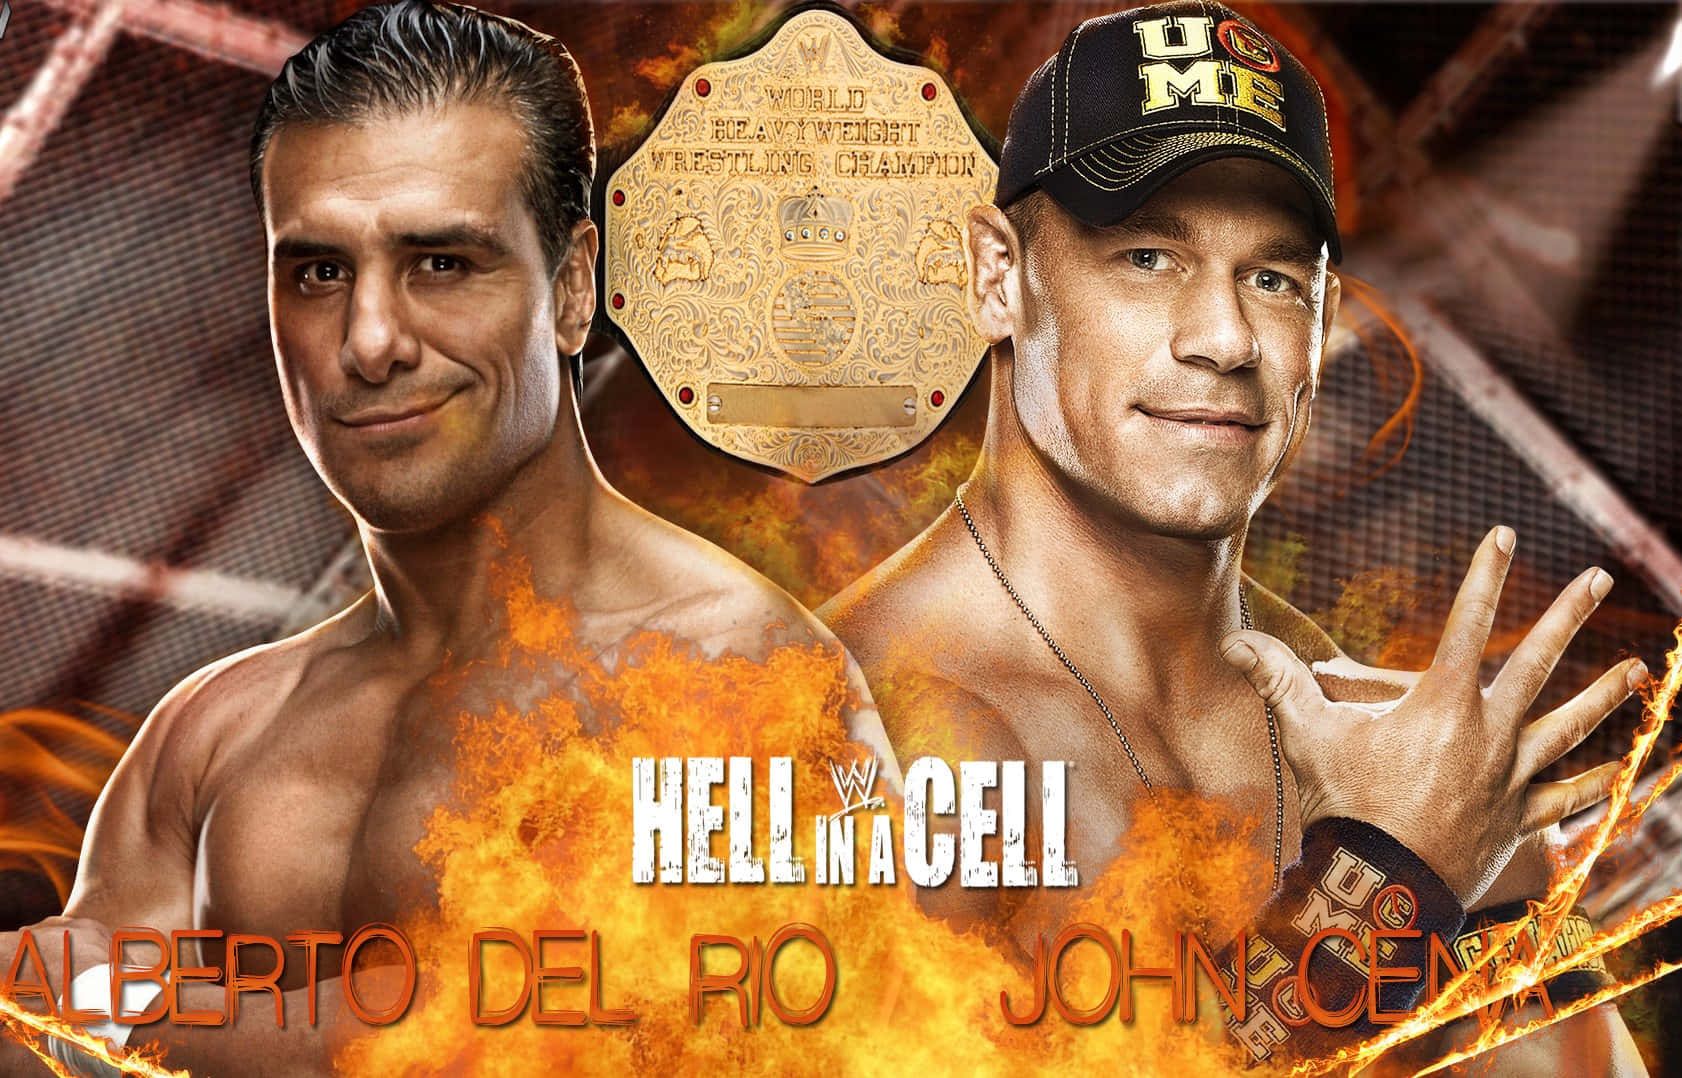 Alberto Del Rio And John Cena Poster Wallpaper